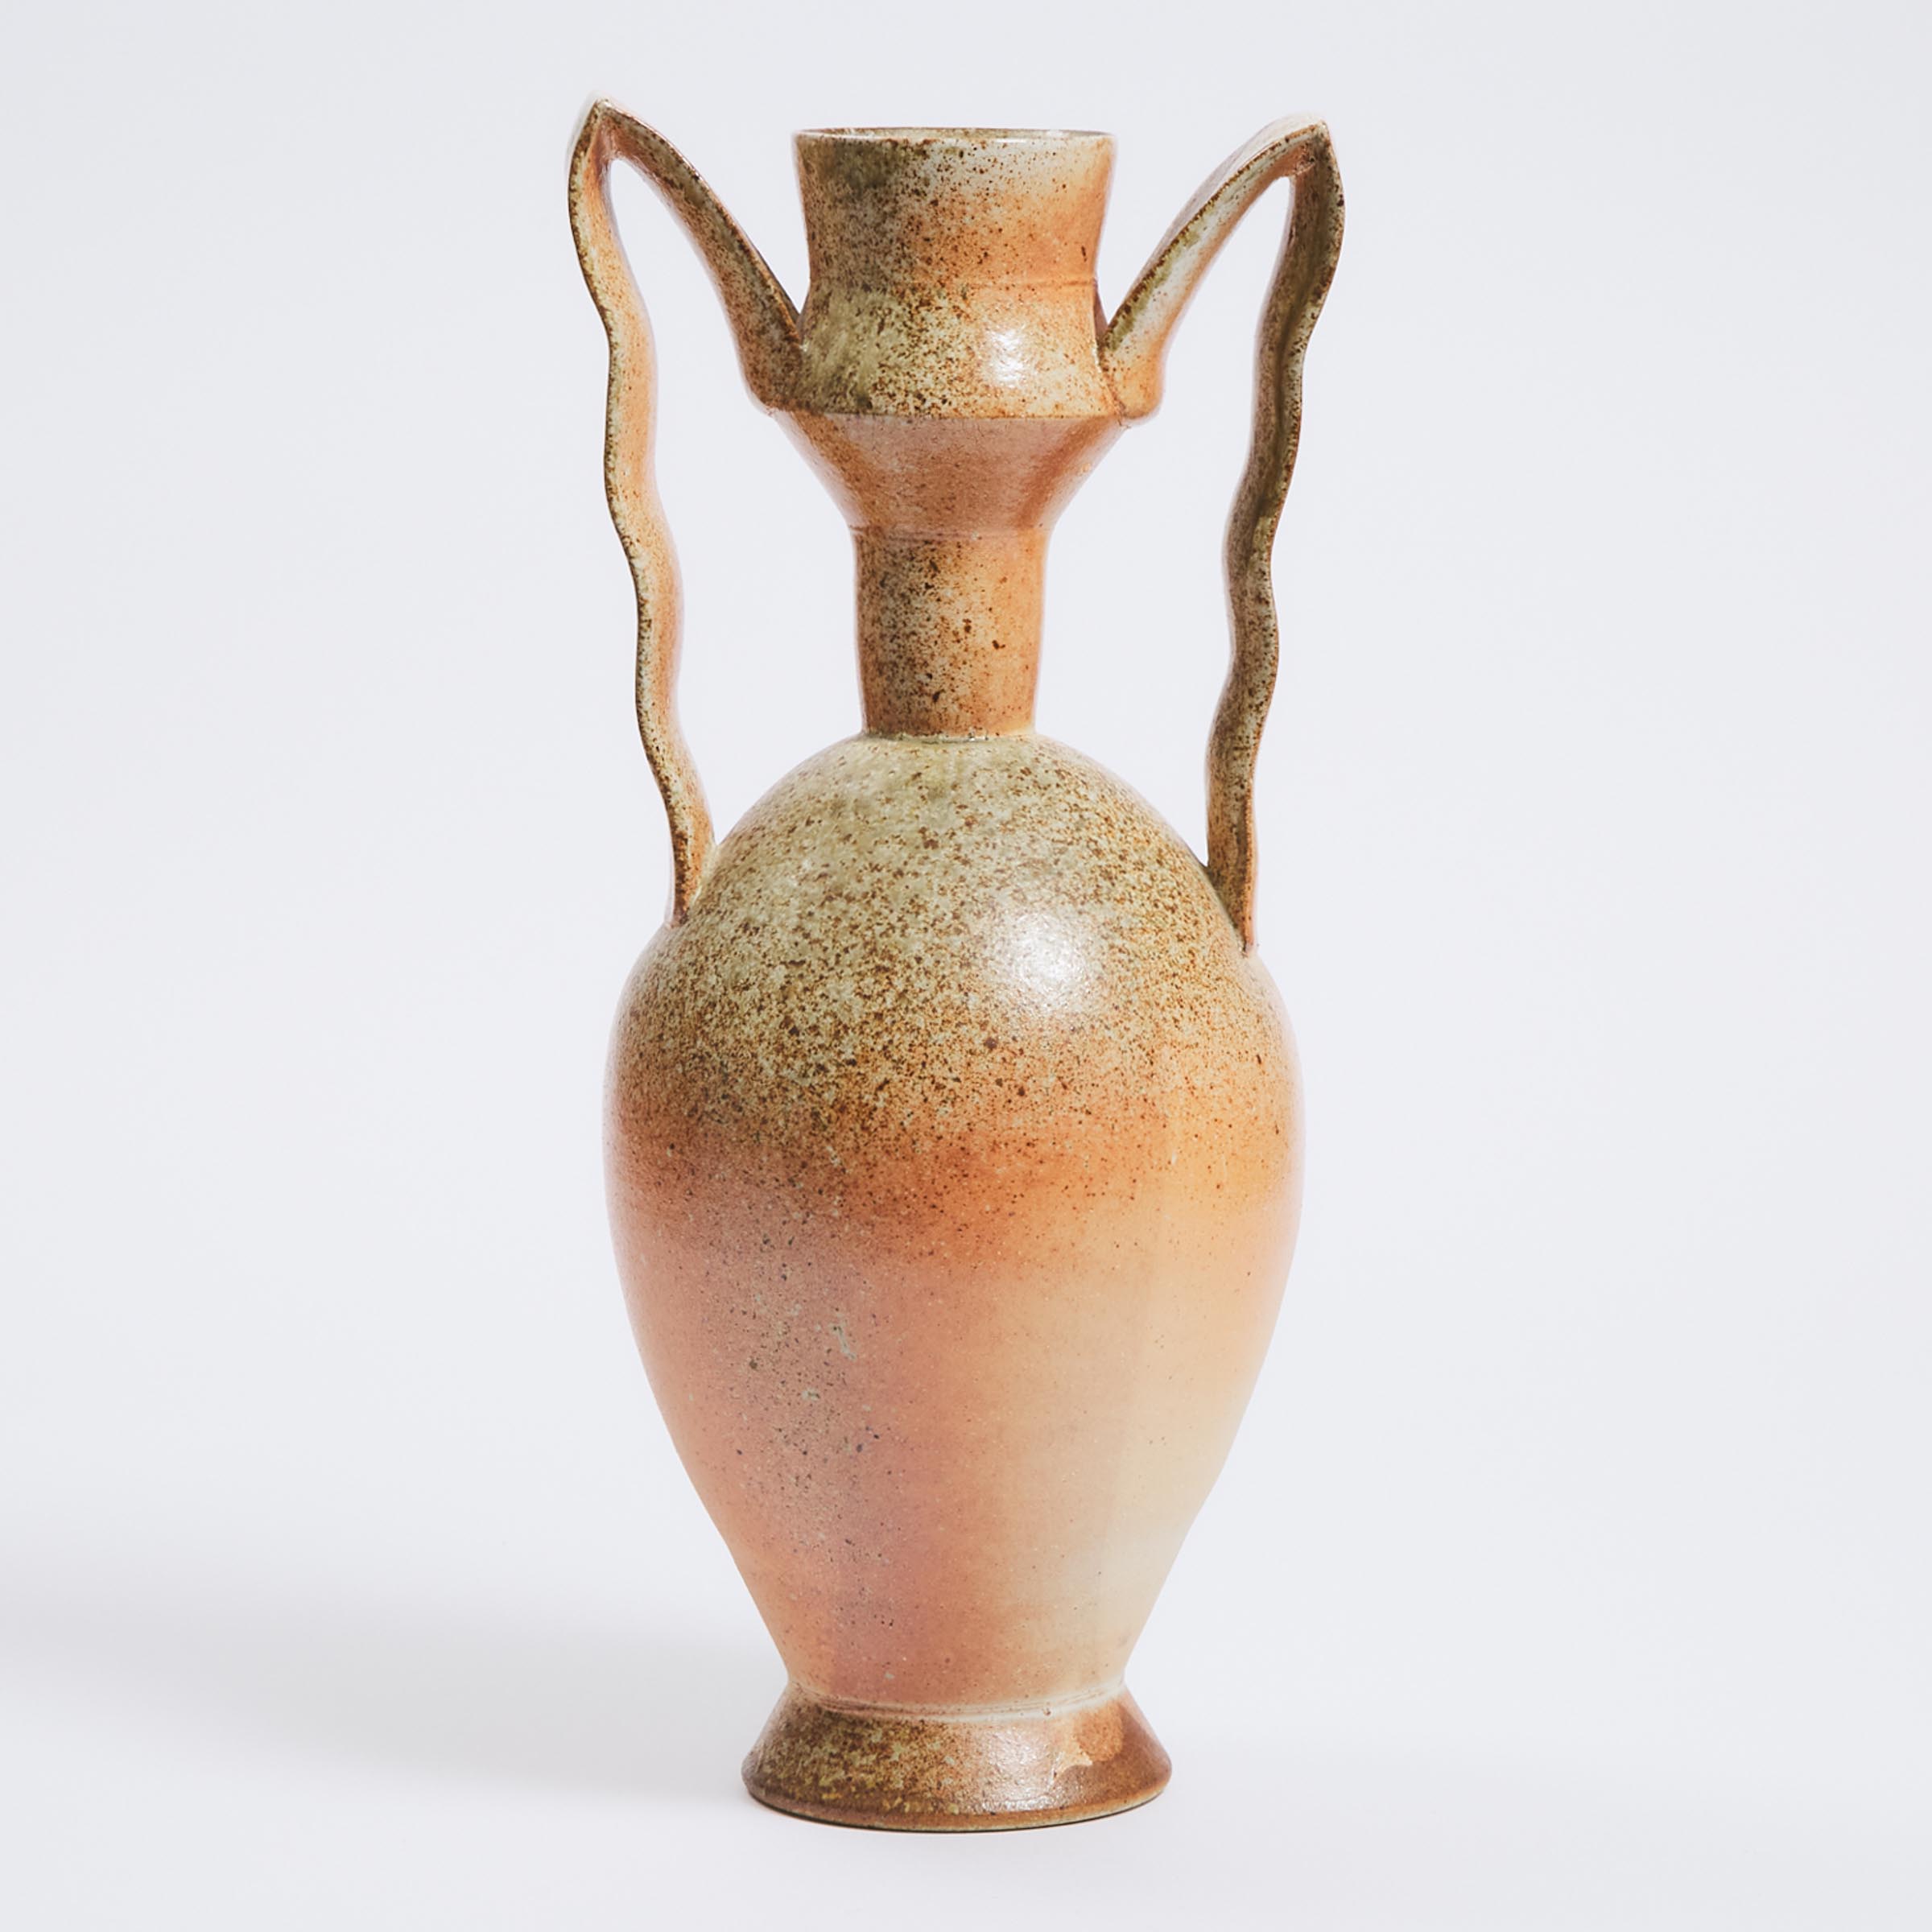 Bruce Cochrane (Canadian, b.1953), Large Two-Handled Stoneware Vase, early 21st century